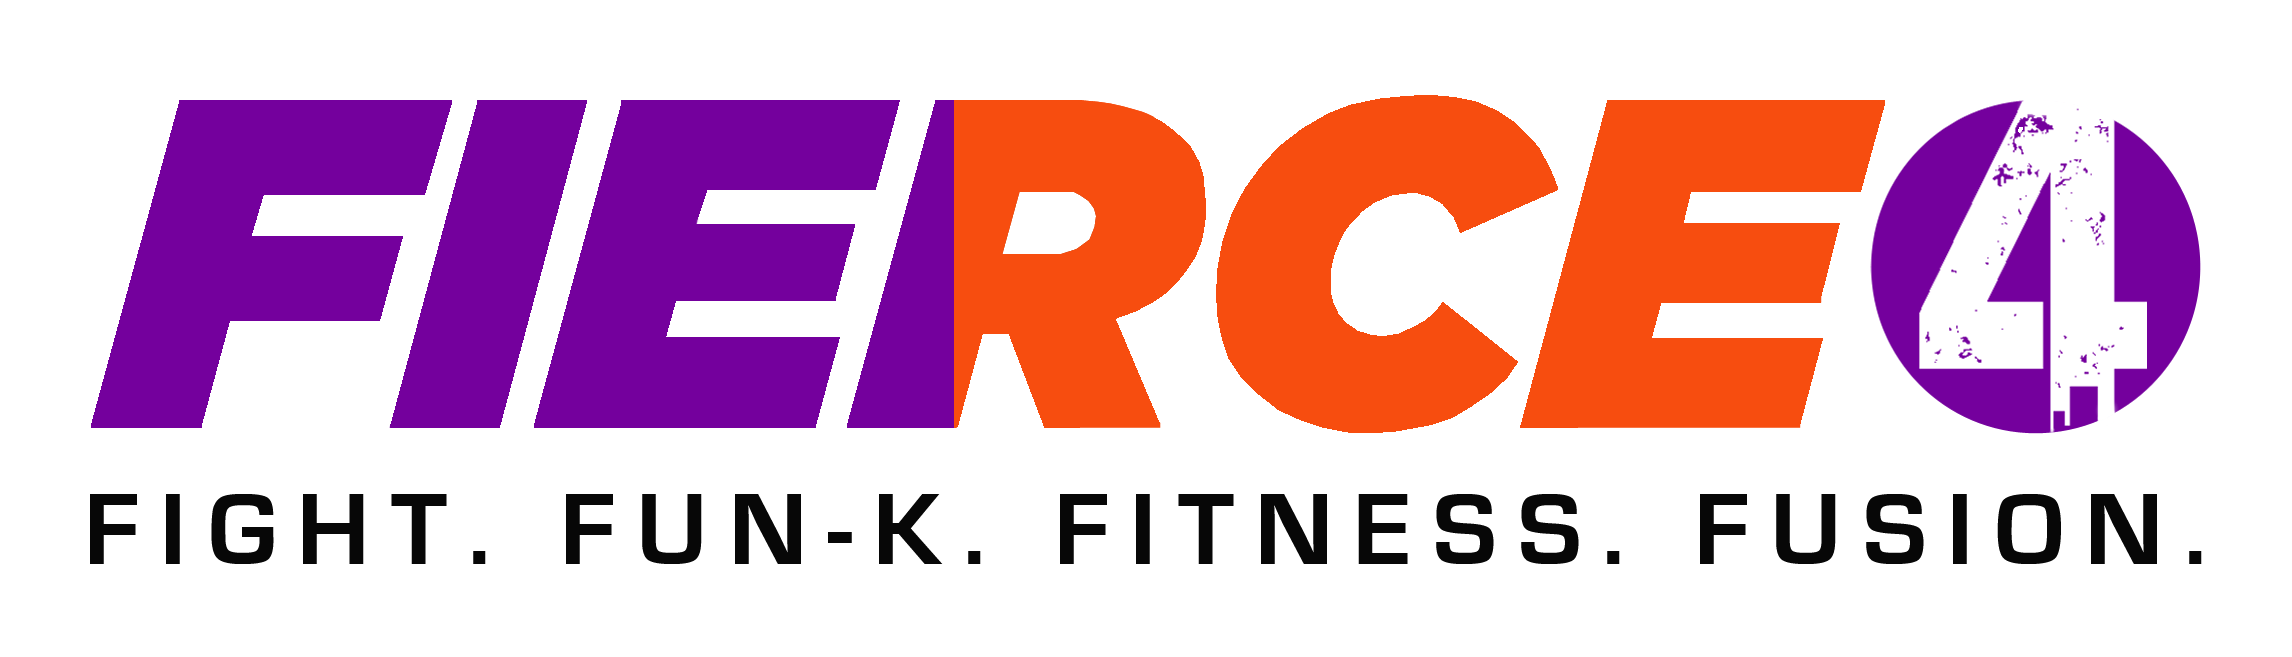 FIERCE4 Fitness